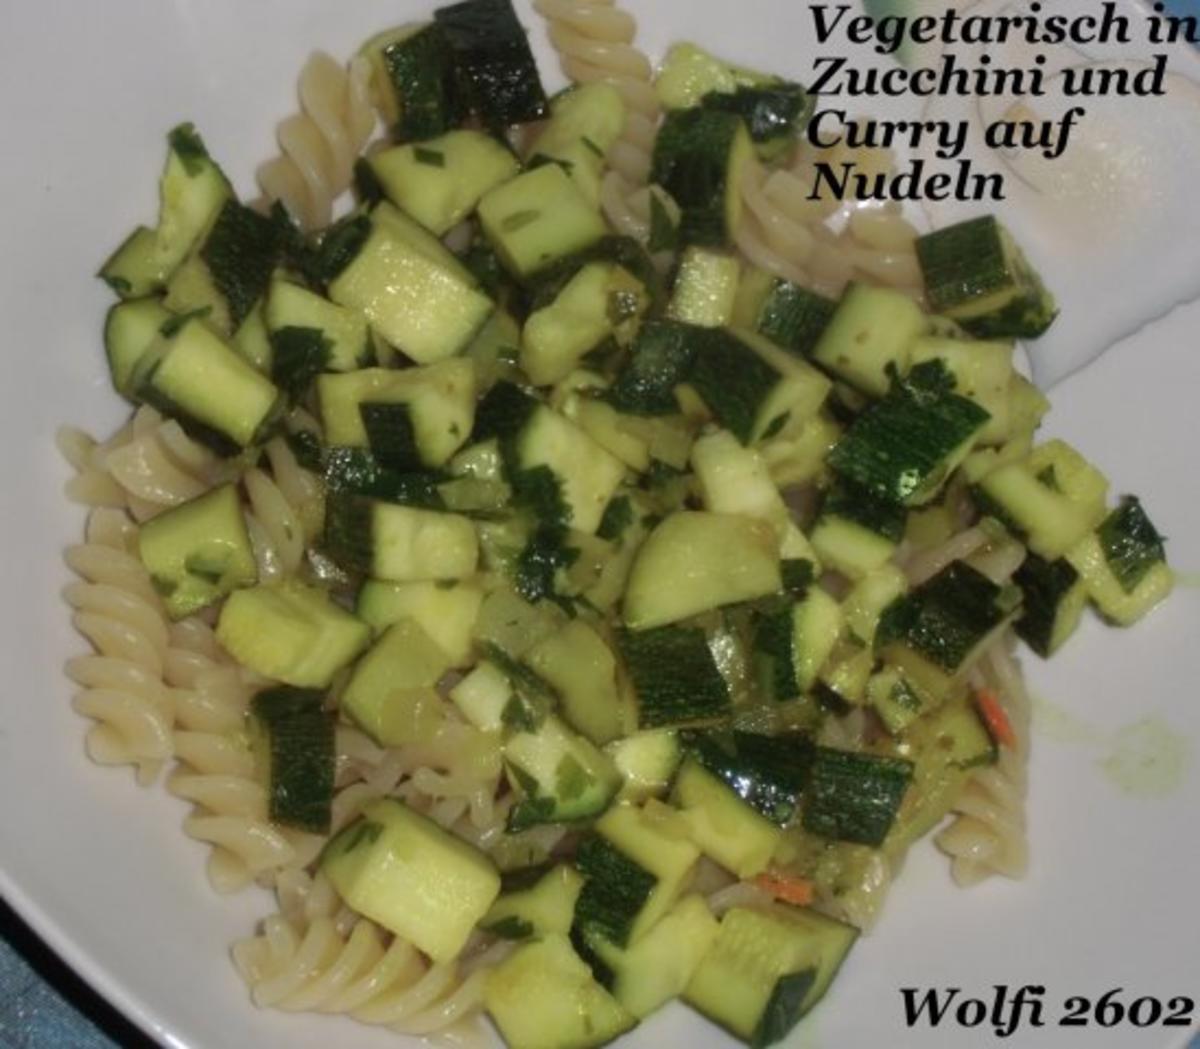 Vegetarisch : Curry-Zwiebel-Zucchini auf Nudeln - Rezept - Bild Nr. 3